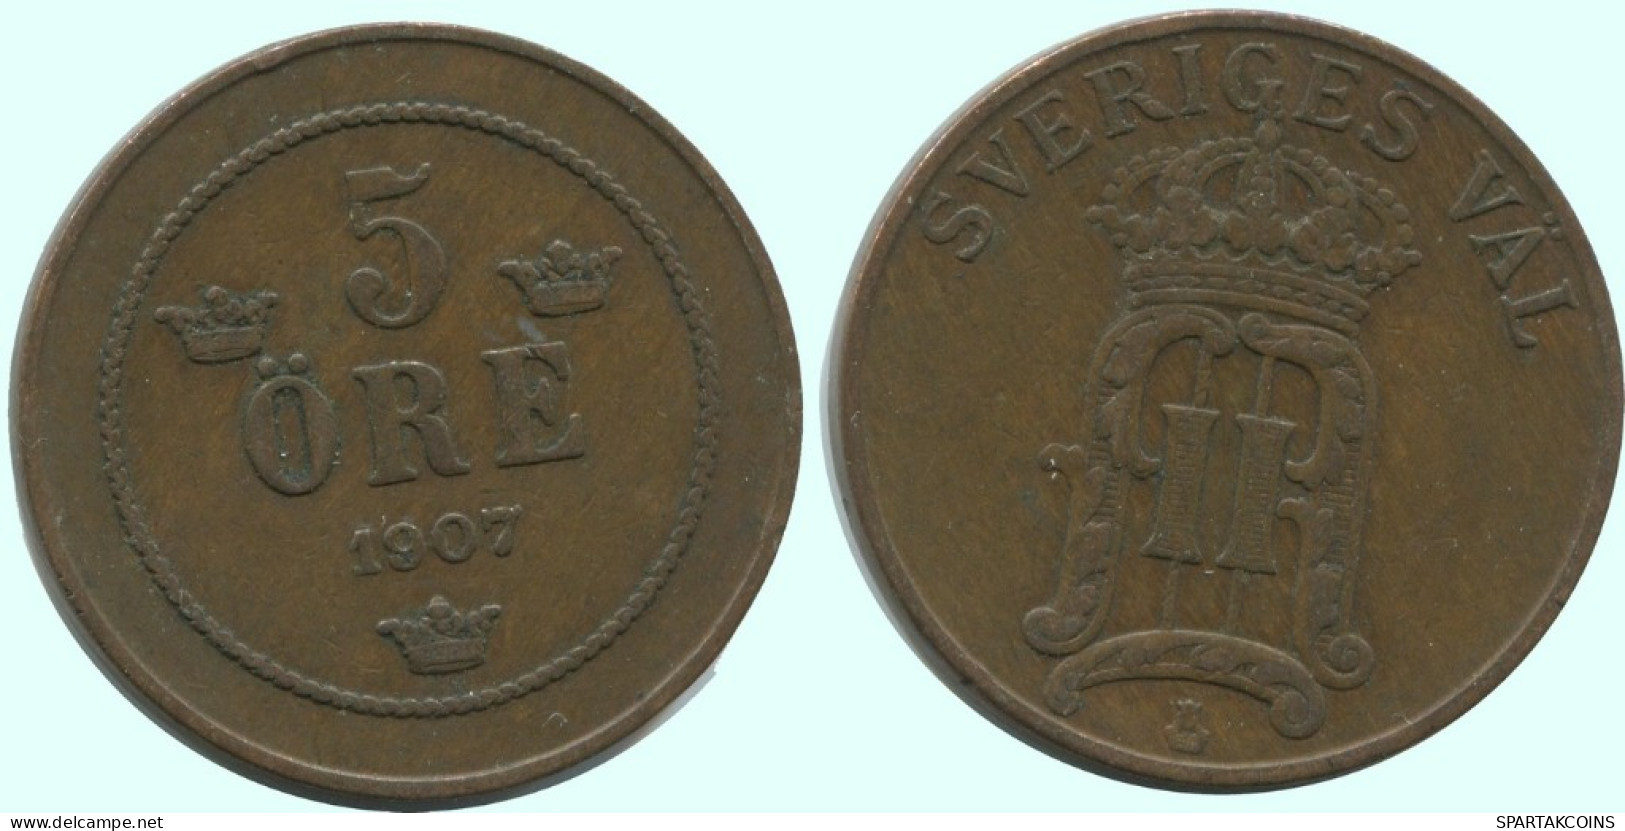 5 ORE 1907 SWEDEN Coin #AC684.2.U.A - Suède